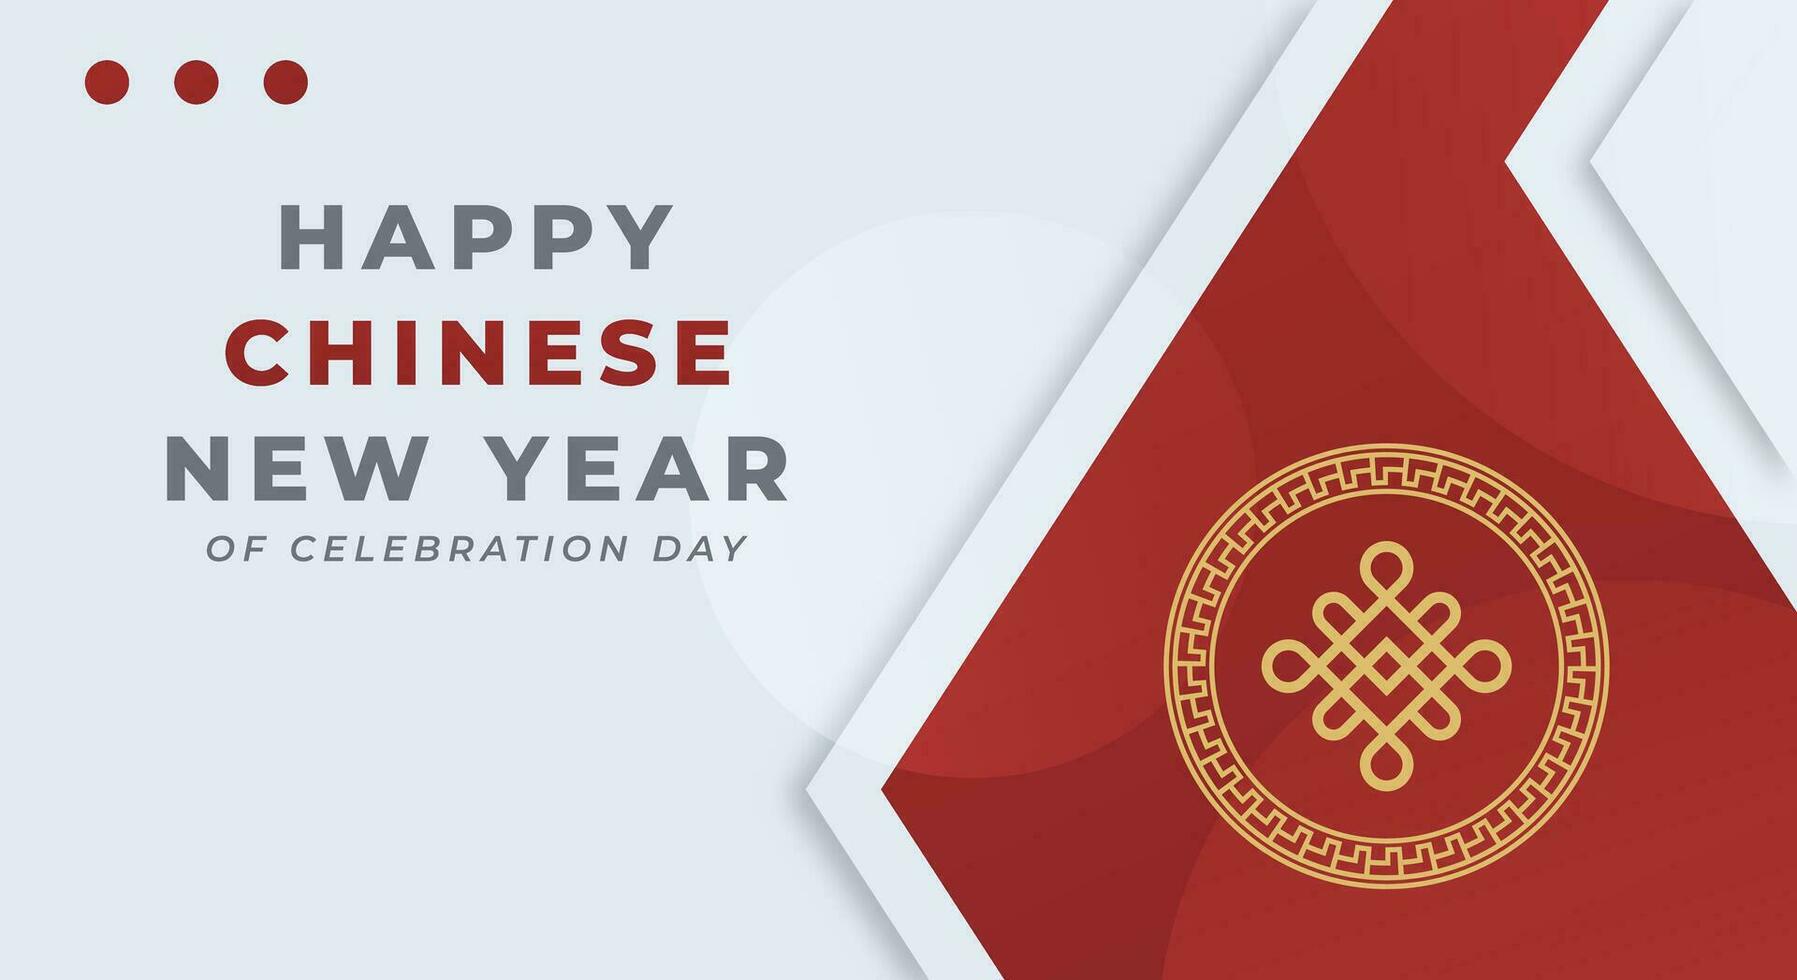 contento chino nuevo año celebracion vector diseño ilustración para fondo, póster, bandera, publicidad, saludo tarjeta